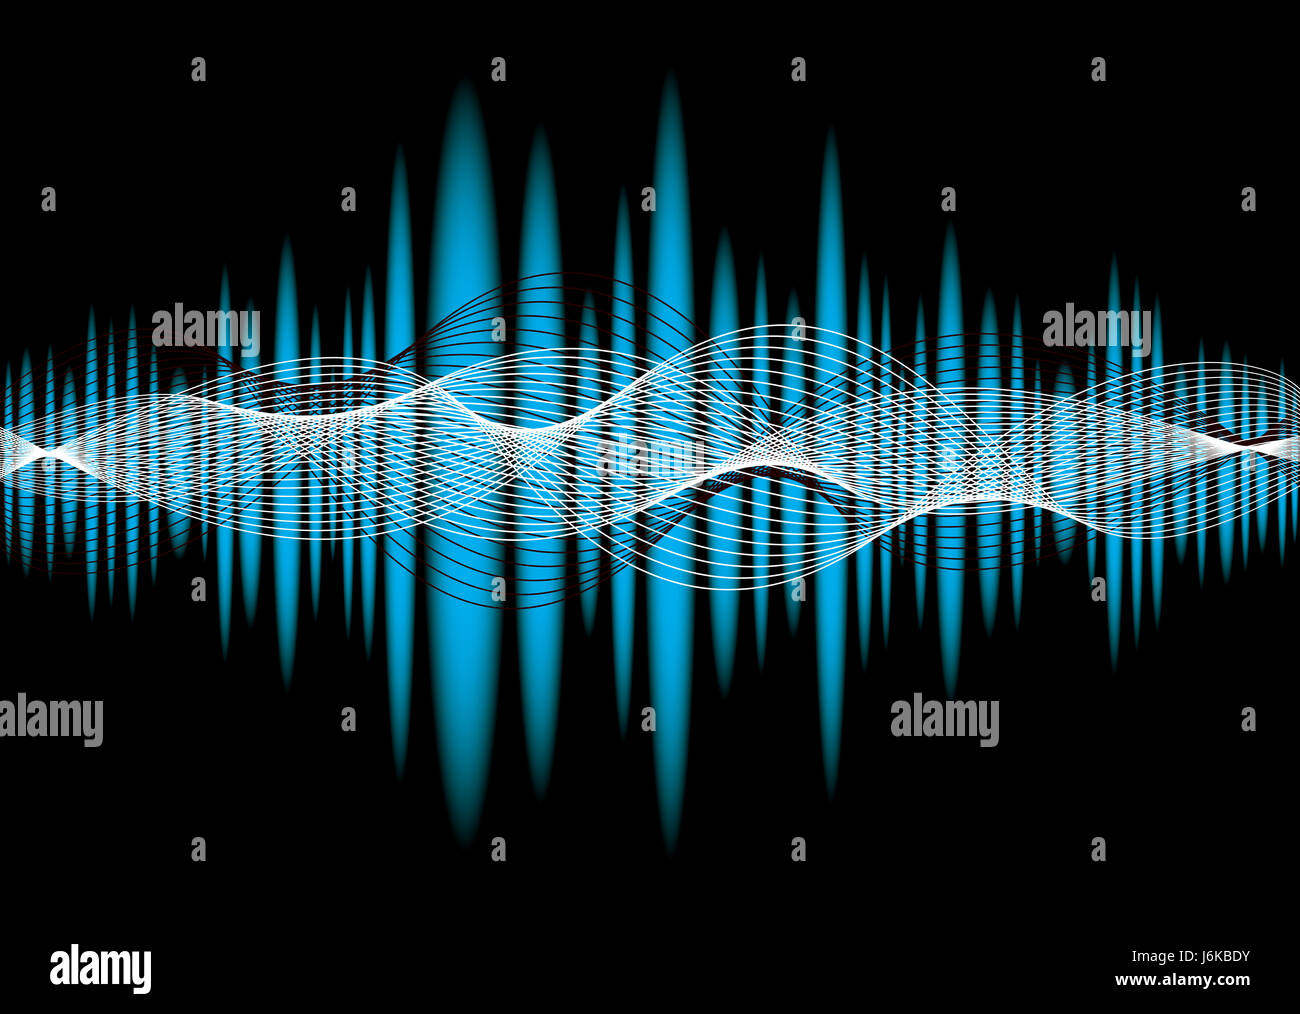 https://c8.alamy.com/compes/j6kbdy/ecualizador-de-sonido-de-musica-abstracta-telon-de-fondo-grafico-azul-de-onda-j6kbdy.jpg